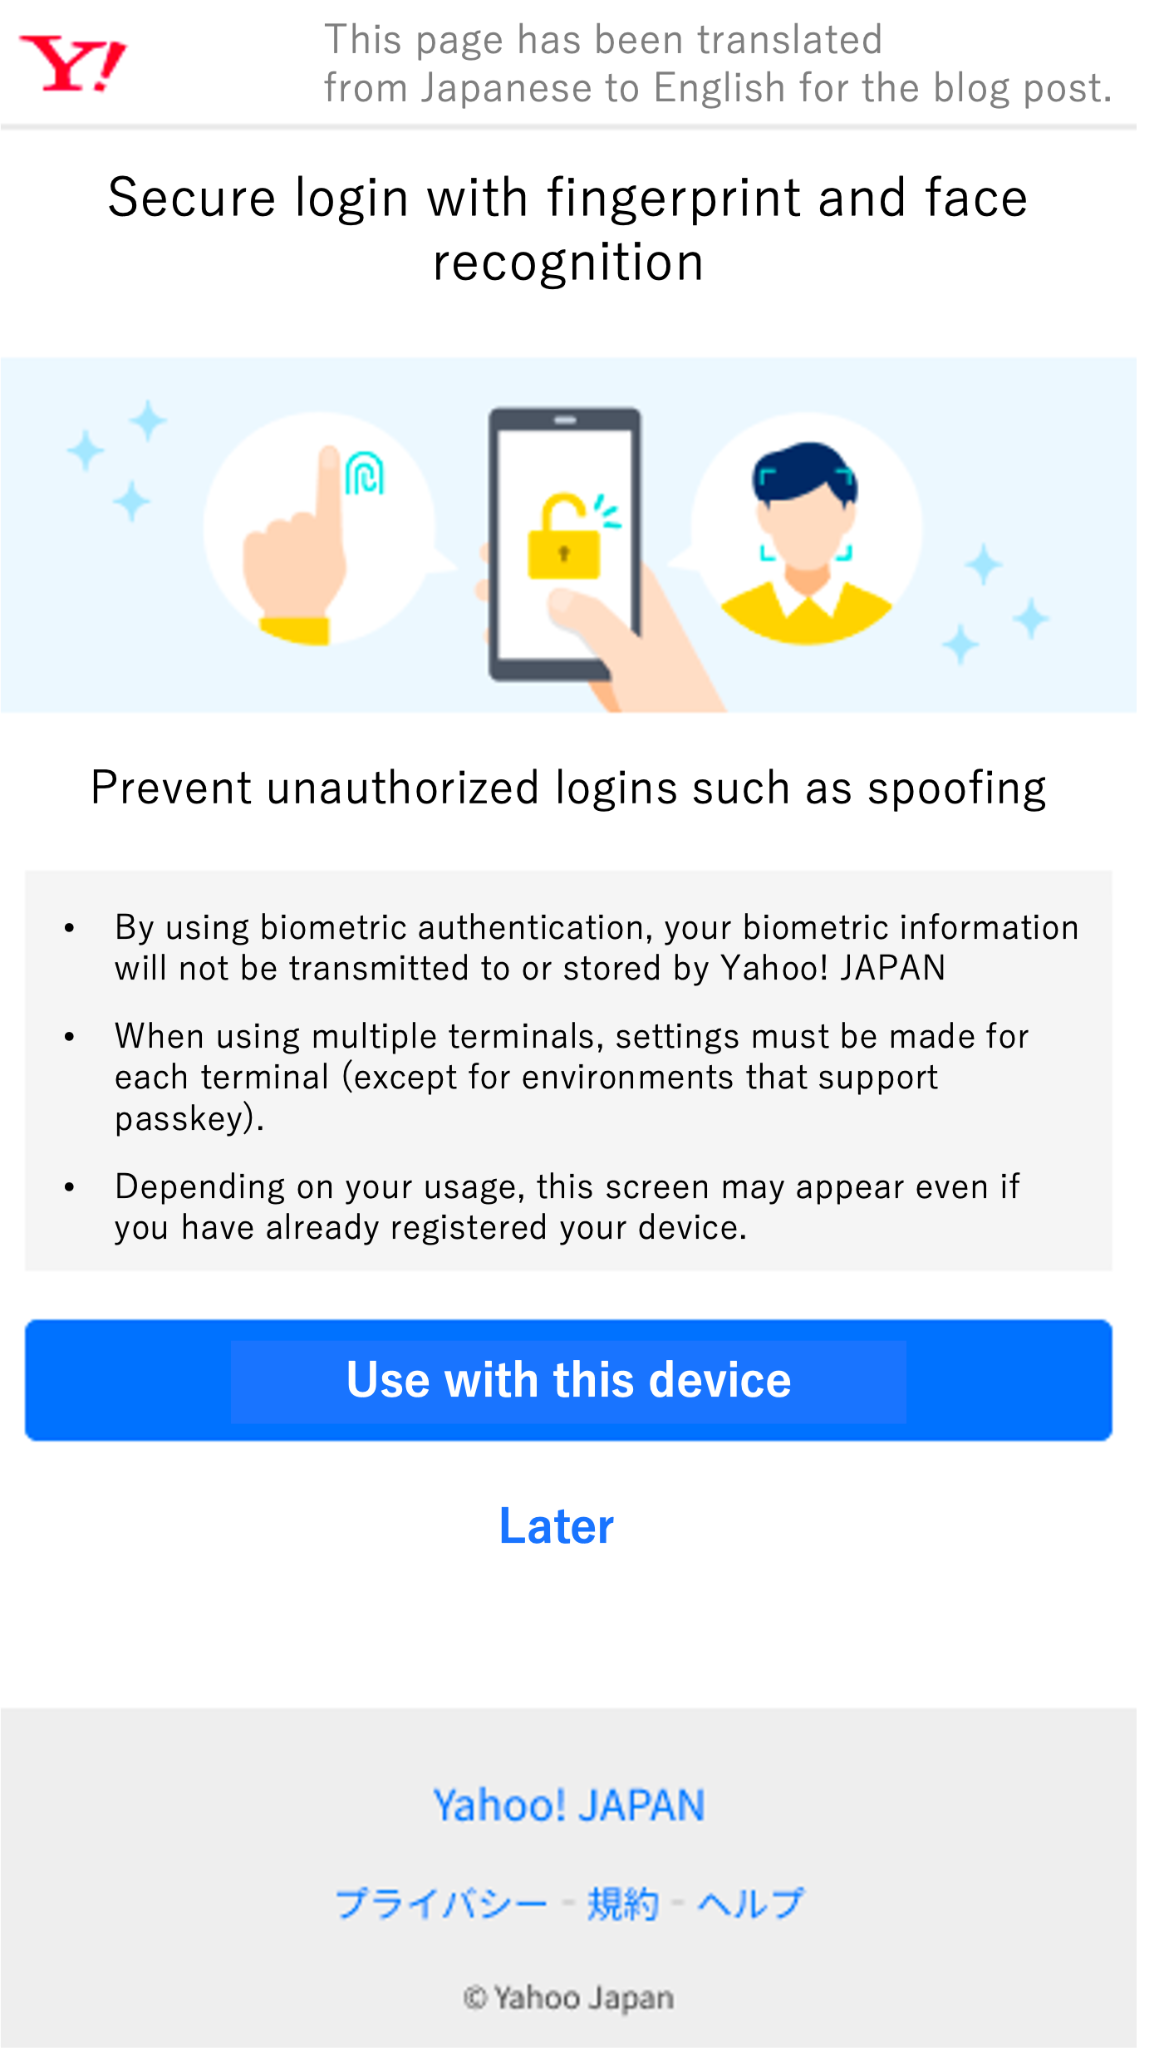 Angielskie tłumaczenie usługi Yahoo! JAPAN. Strona rejestracji klucza dostępu w systemie iOS (grupa kontrolna).